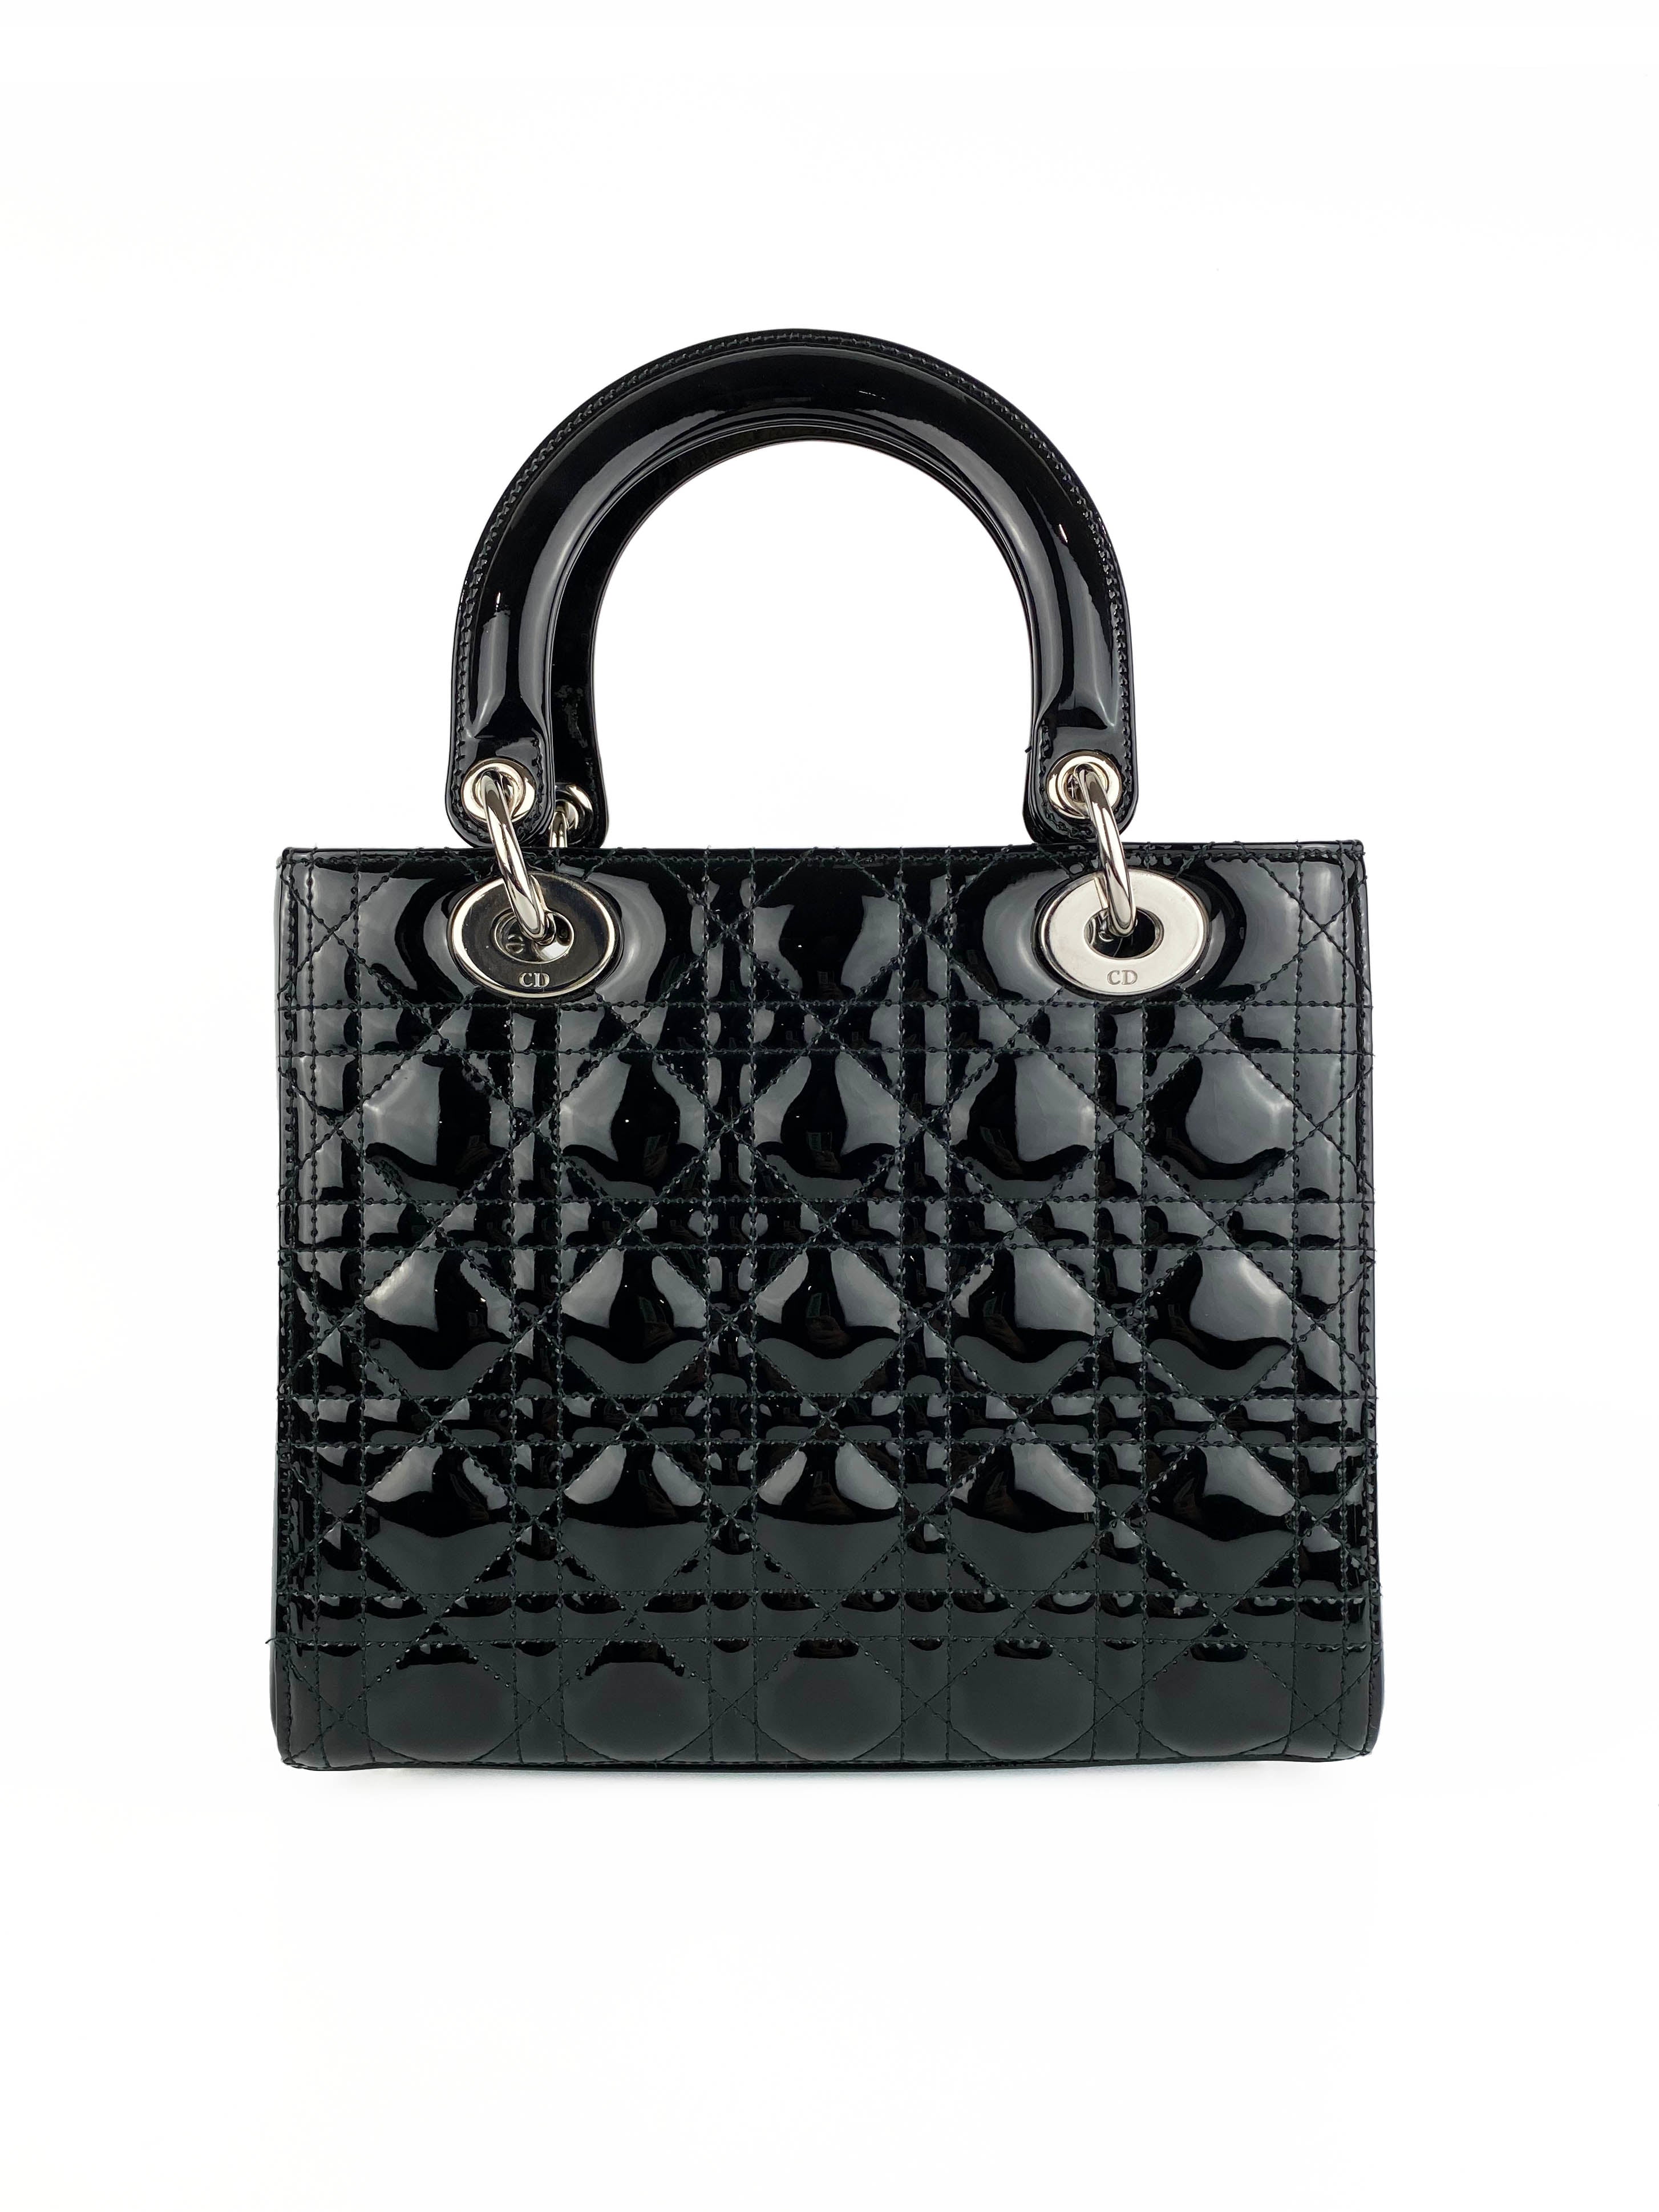 Christian Dior Medium Black Lady Dior Bag